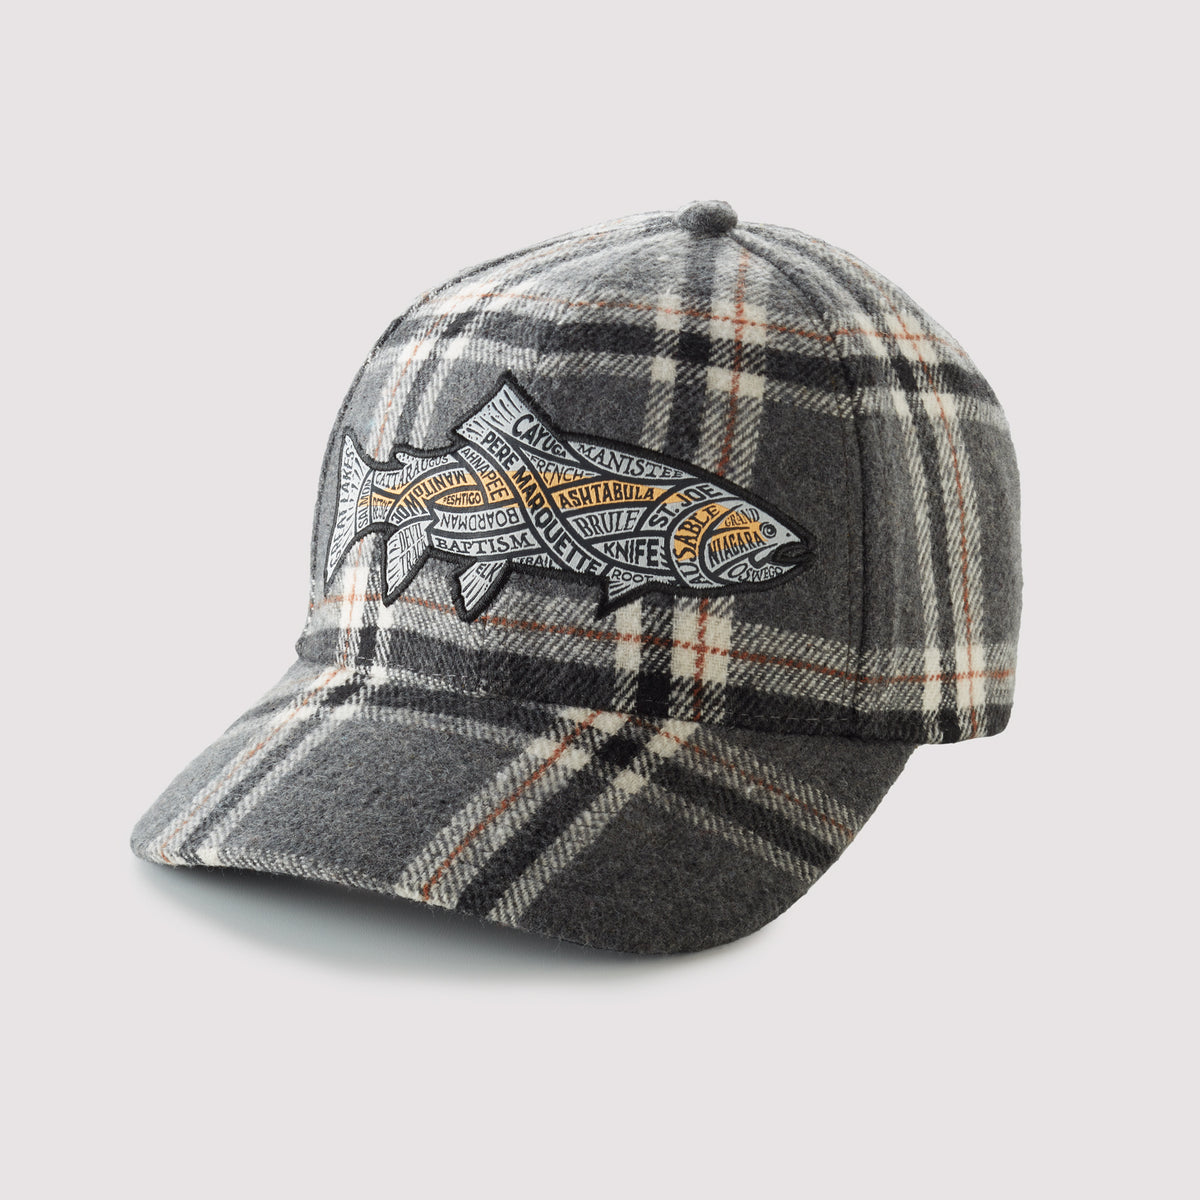 Great Lakes Rivers Steelhead - Plaid Snapback Hat